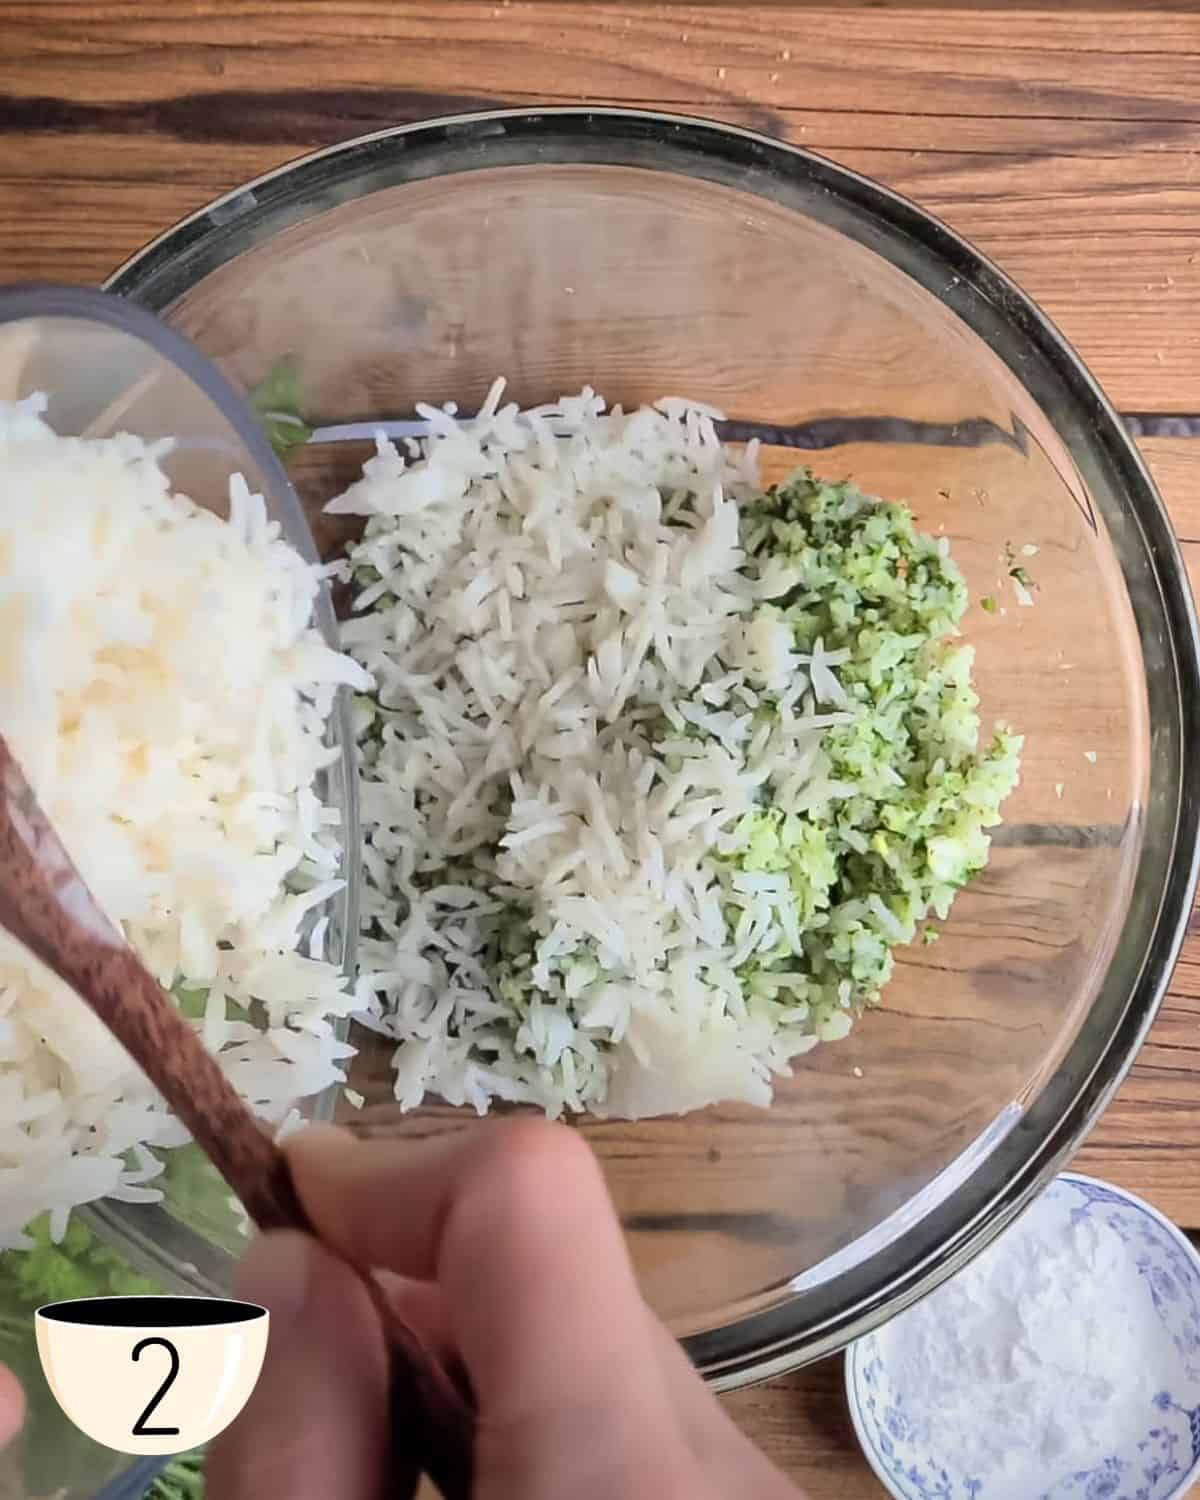 Uma tigela de vidro com mistura de arroz processado e uma mão humana adicionando mais arroz cozido. Esta é a etapa 2 das instruções de como fazer bolinhos de arroz assados.